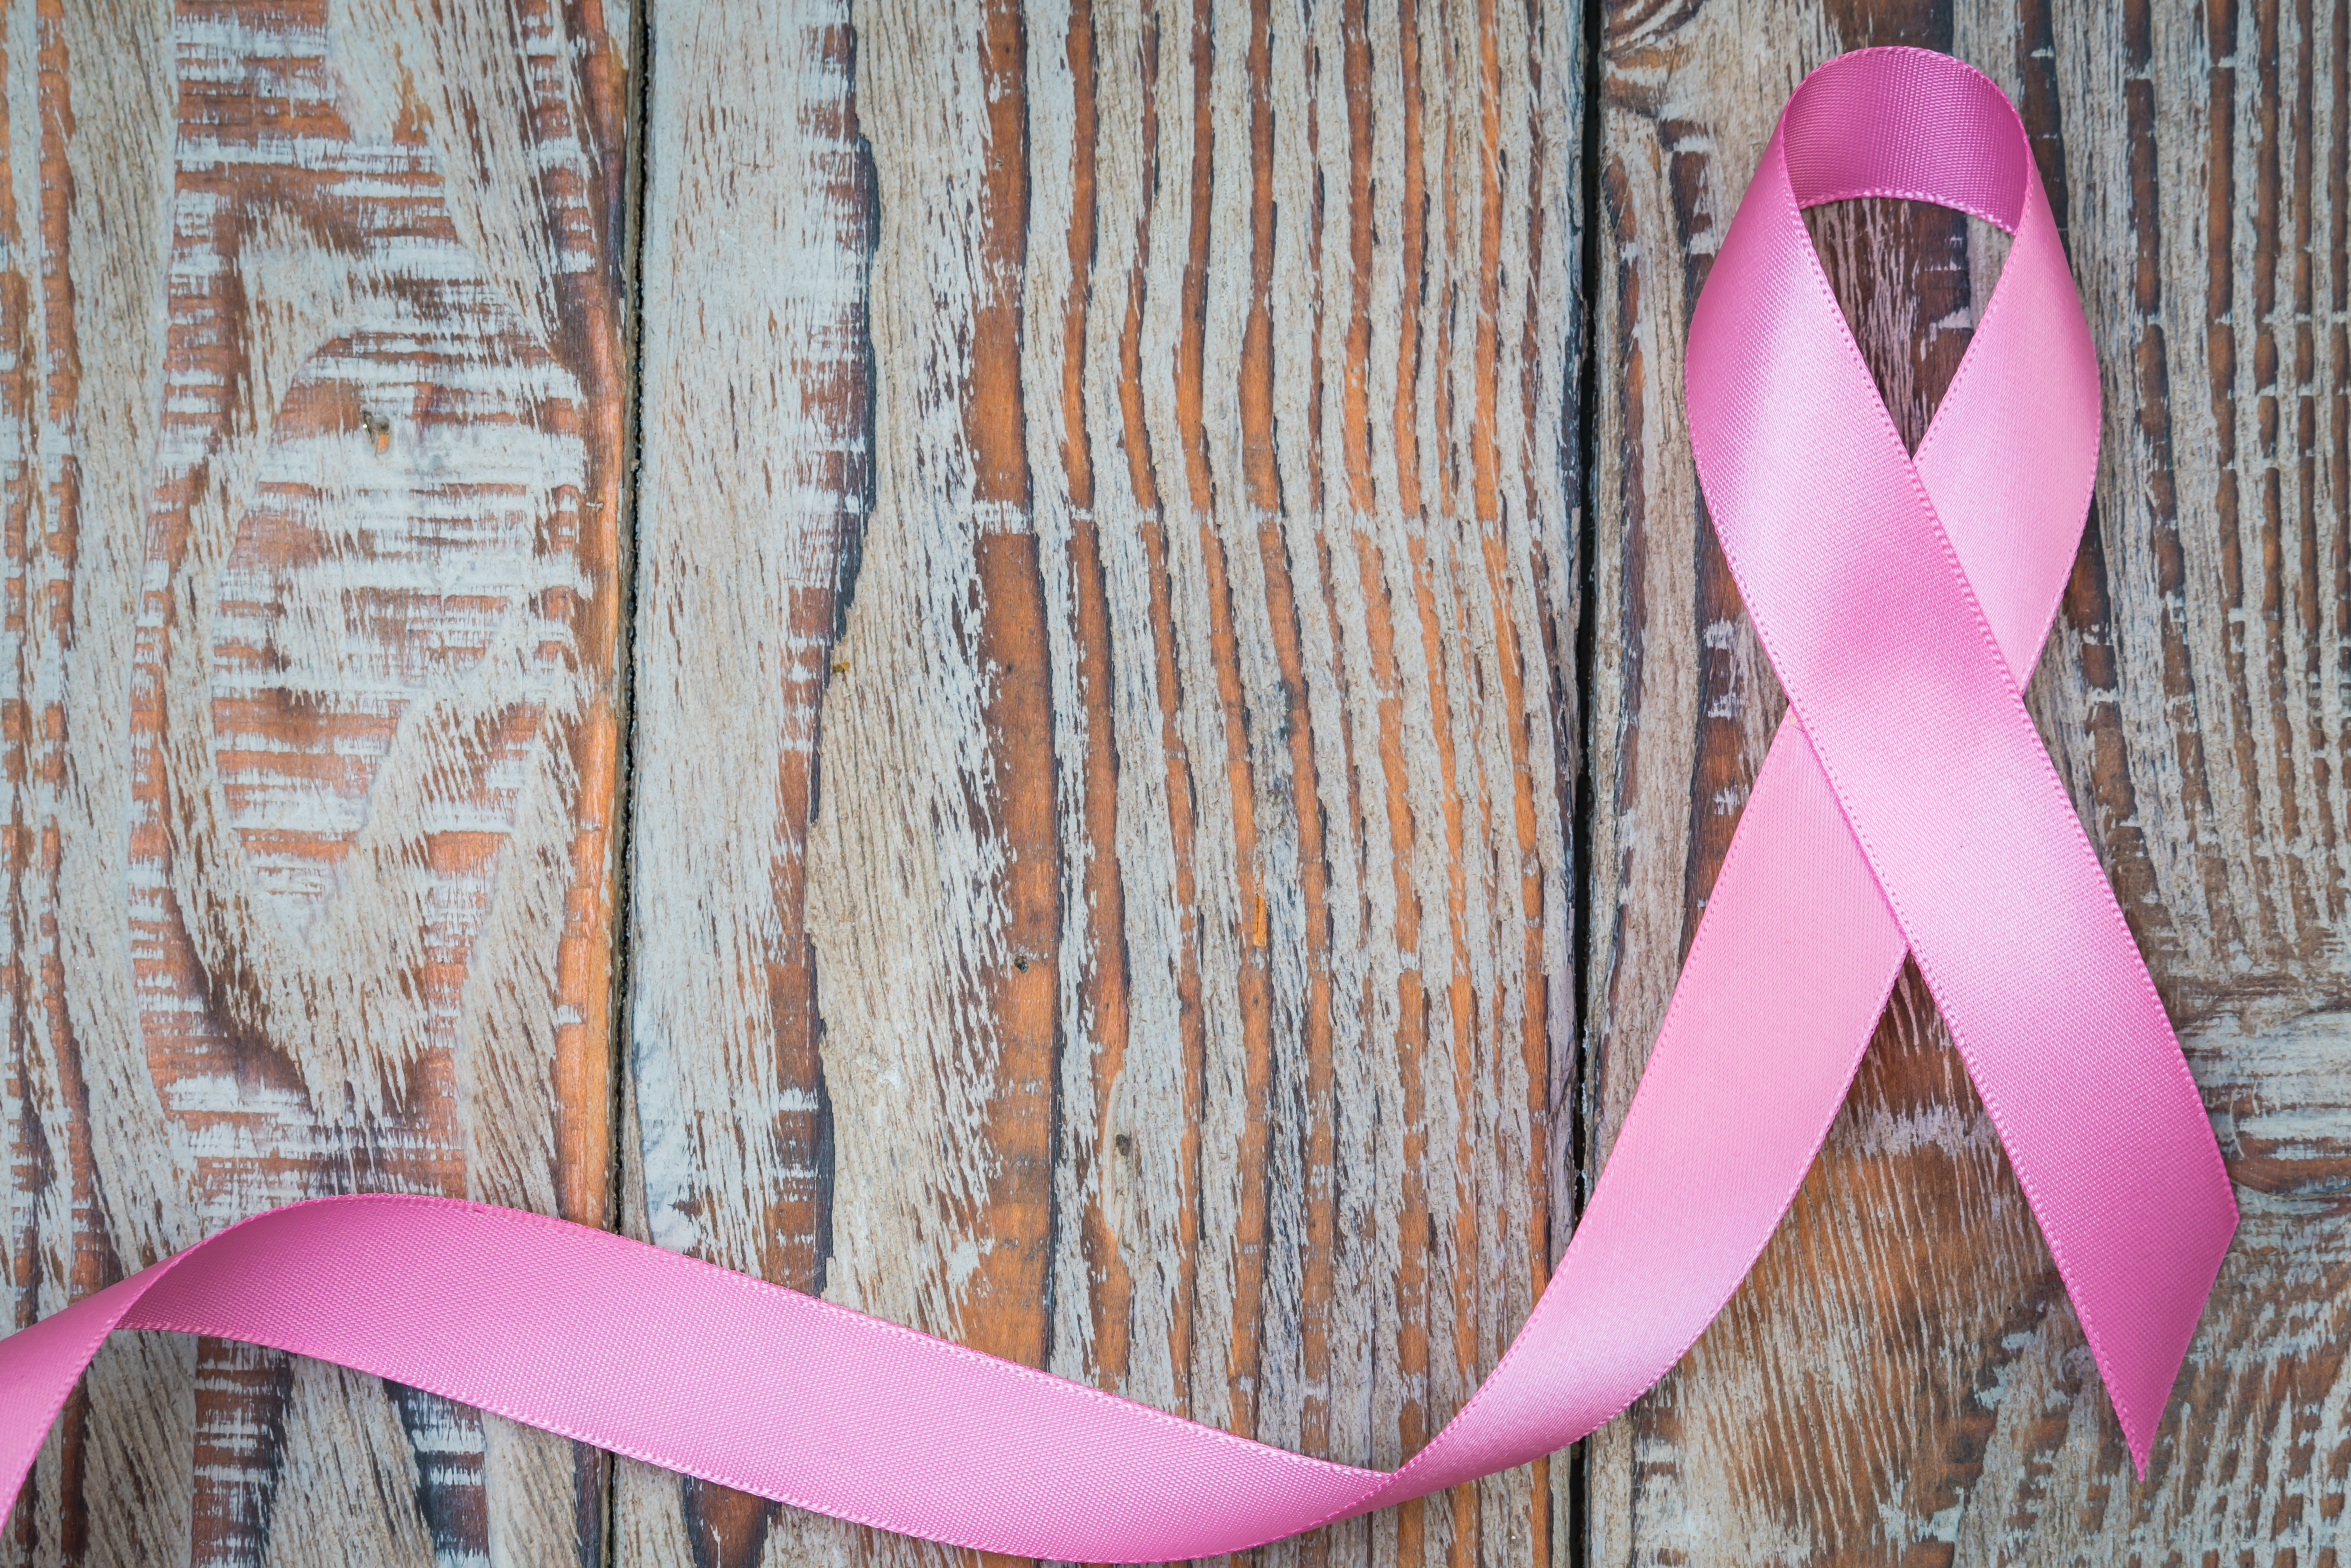 A importância do patologista no diagnóstico de câncer de mama